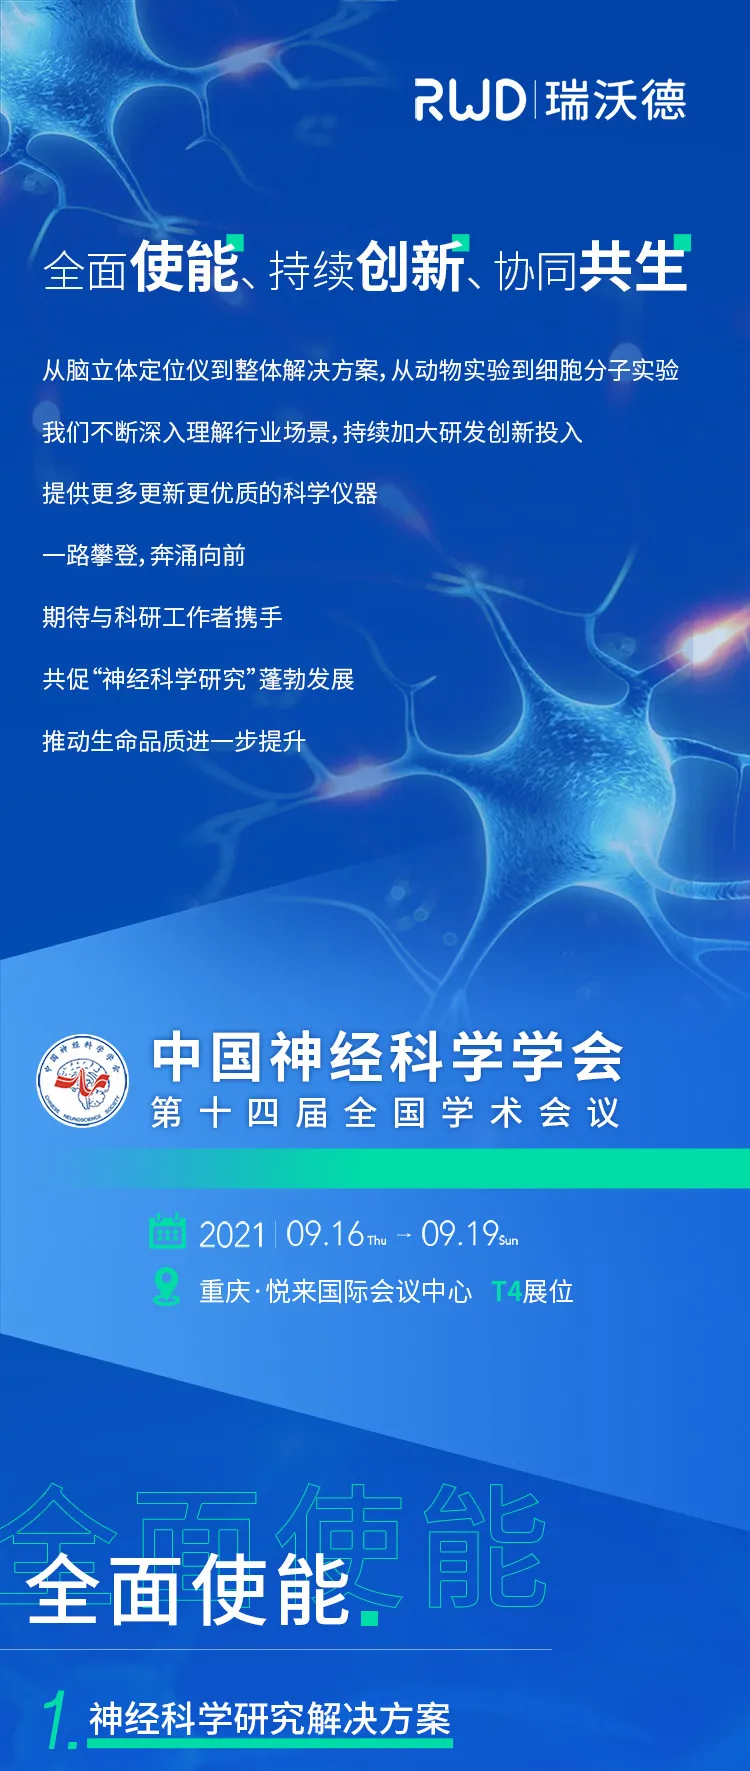 会议邀请︱瑞沃德<em>与您相约</em><em>中国</em>神经科学学会第十四届全国学术会议